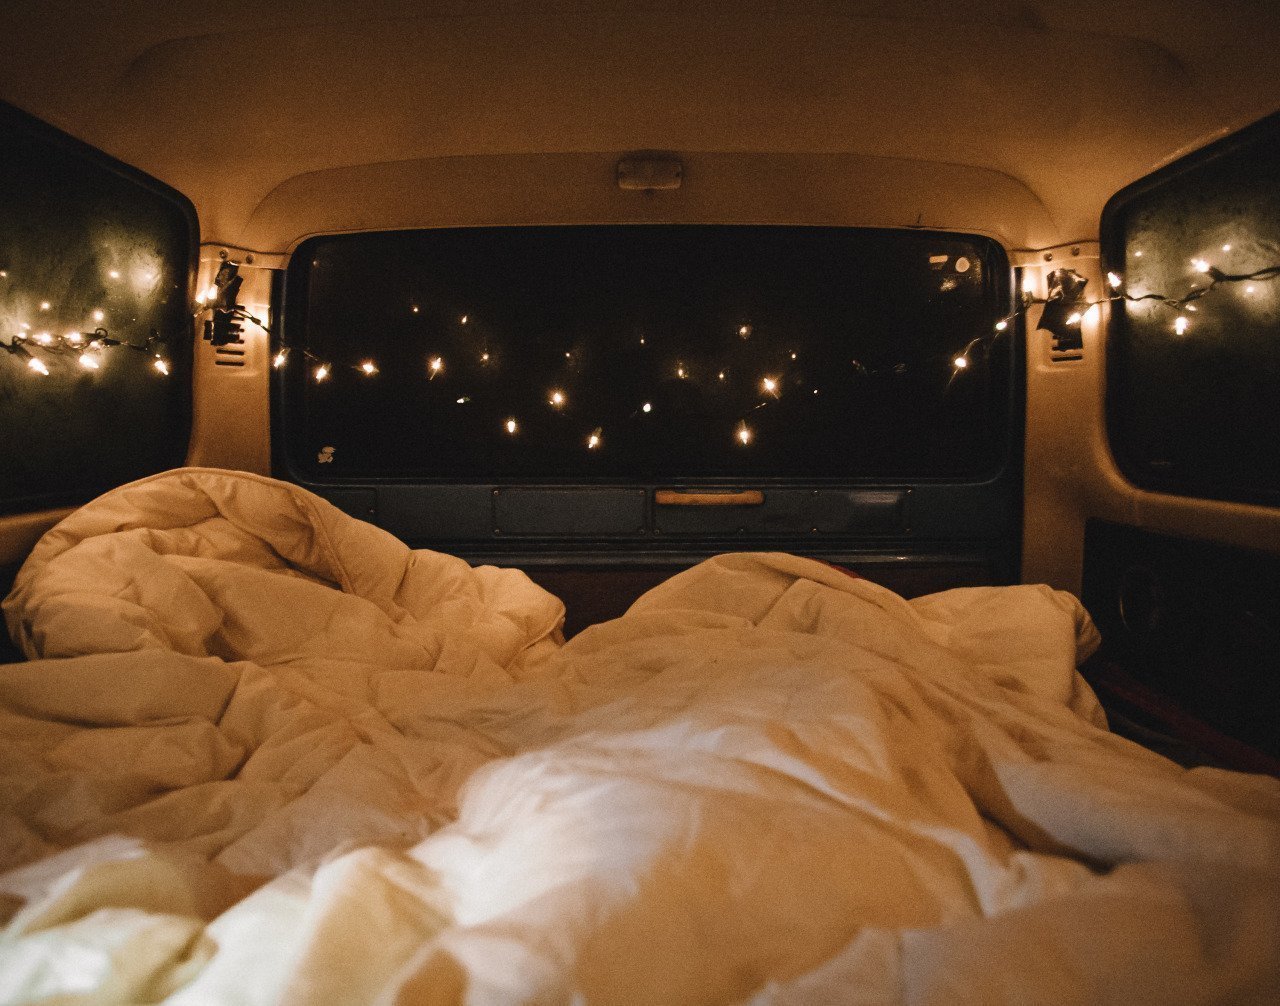 Кровать для ночной вид красиво